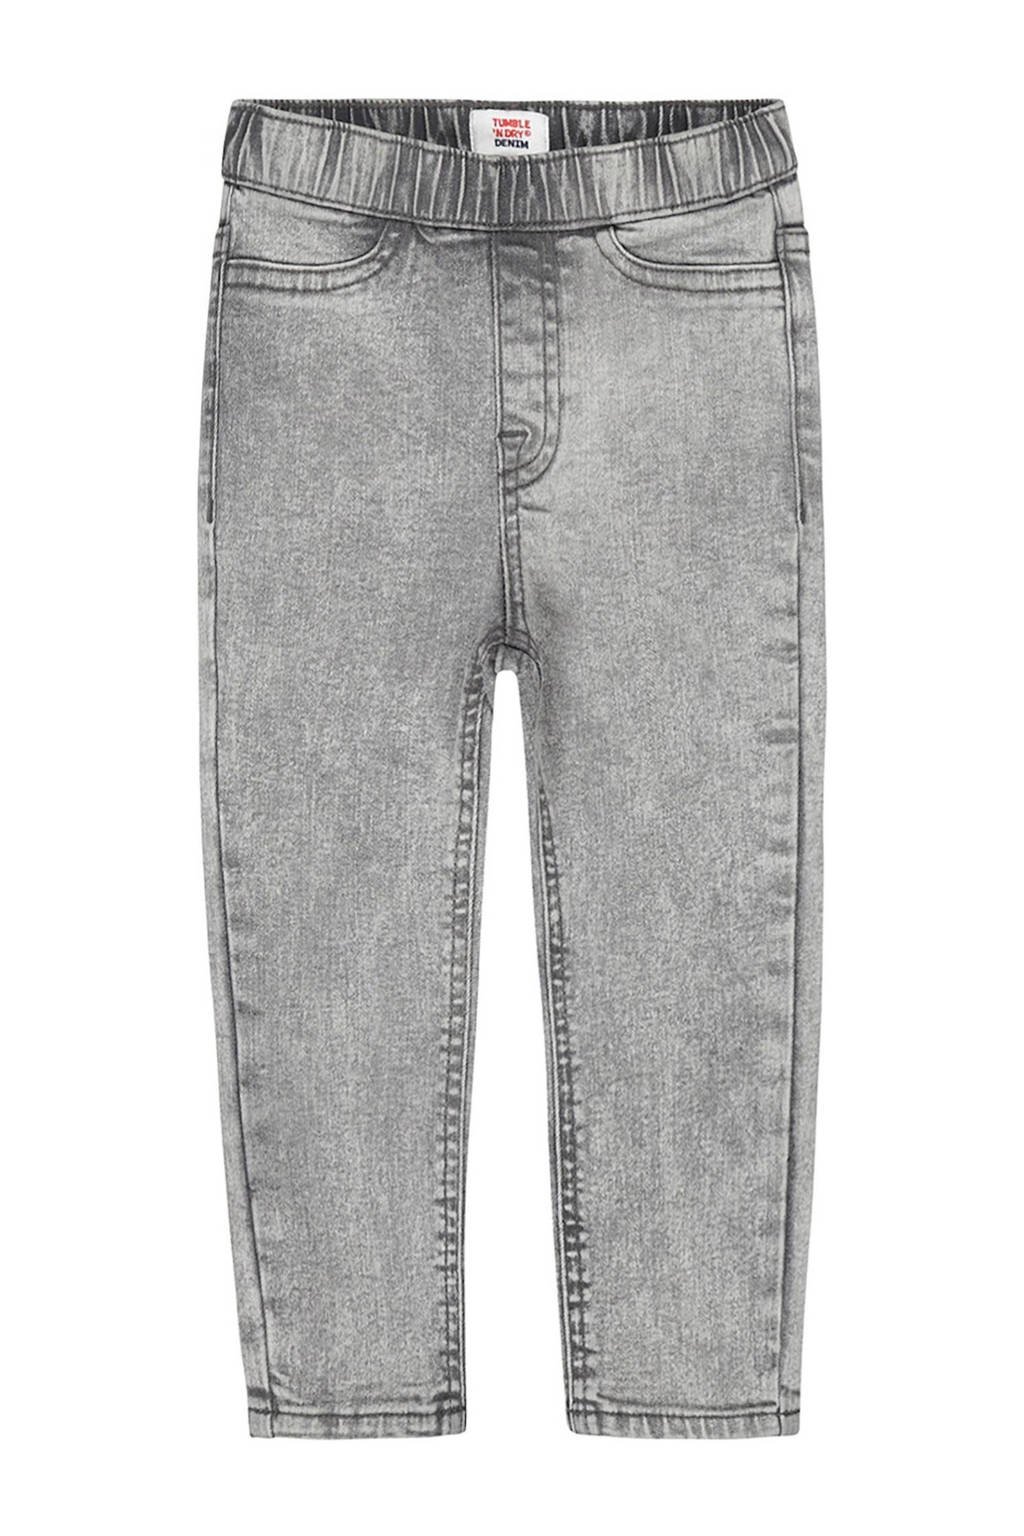 Tumble 'n Dry skinny jeans Jordan denim light grey